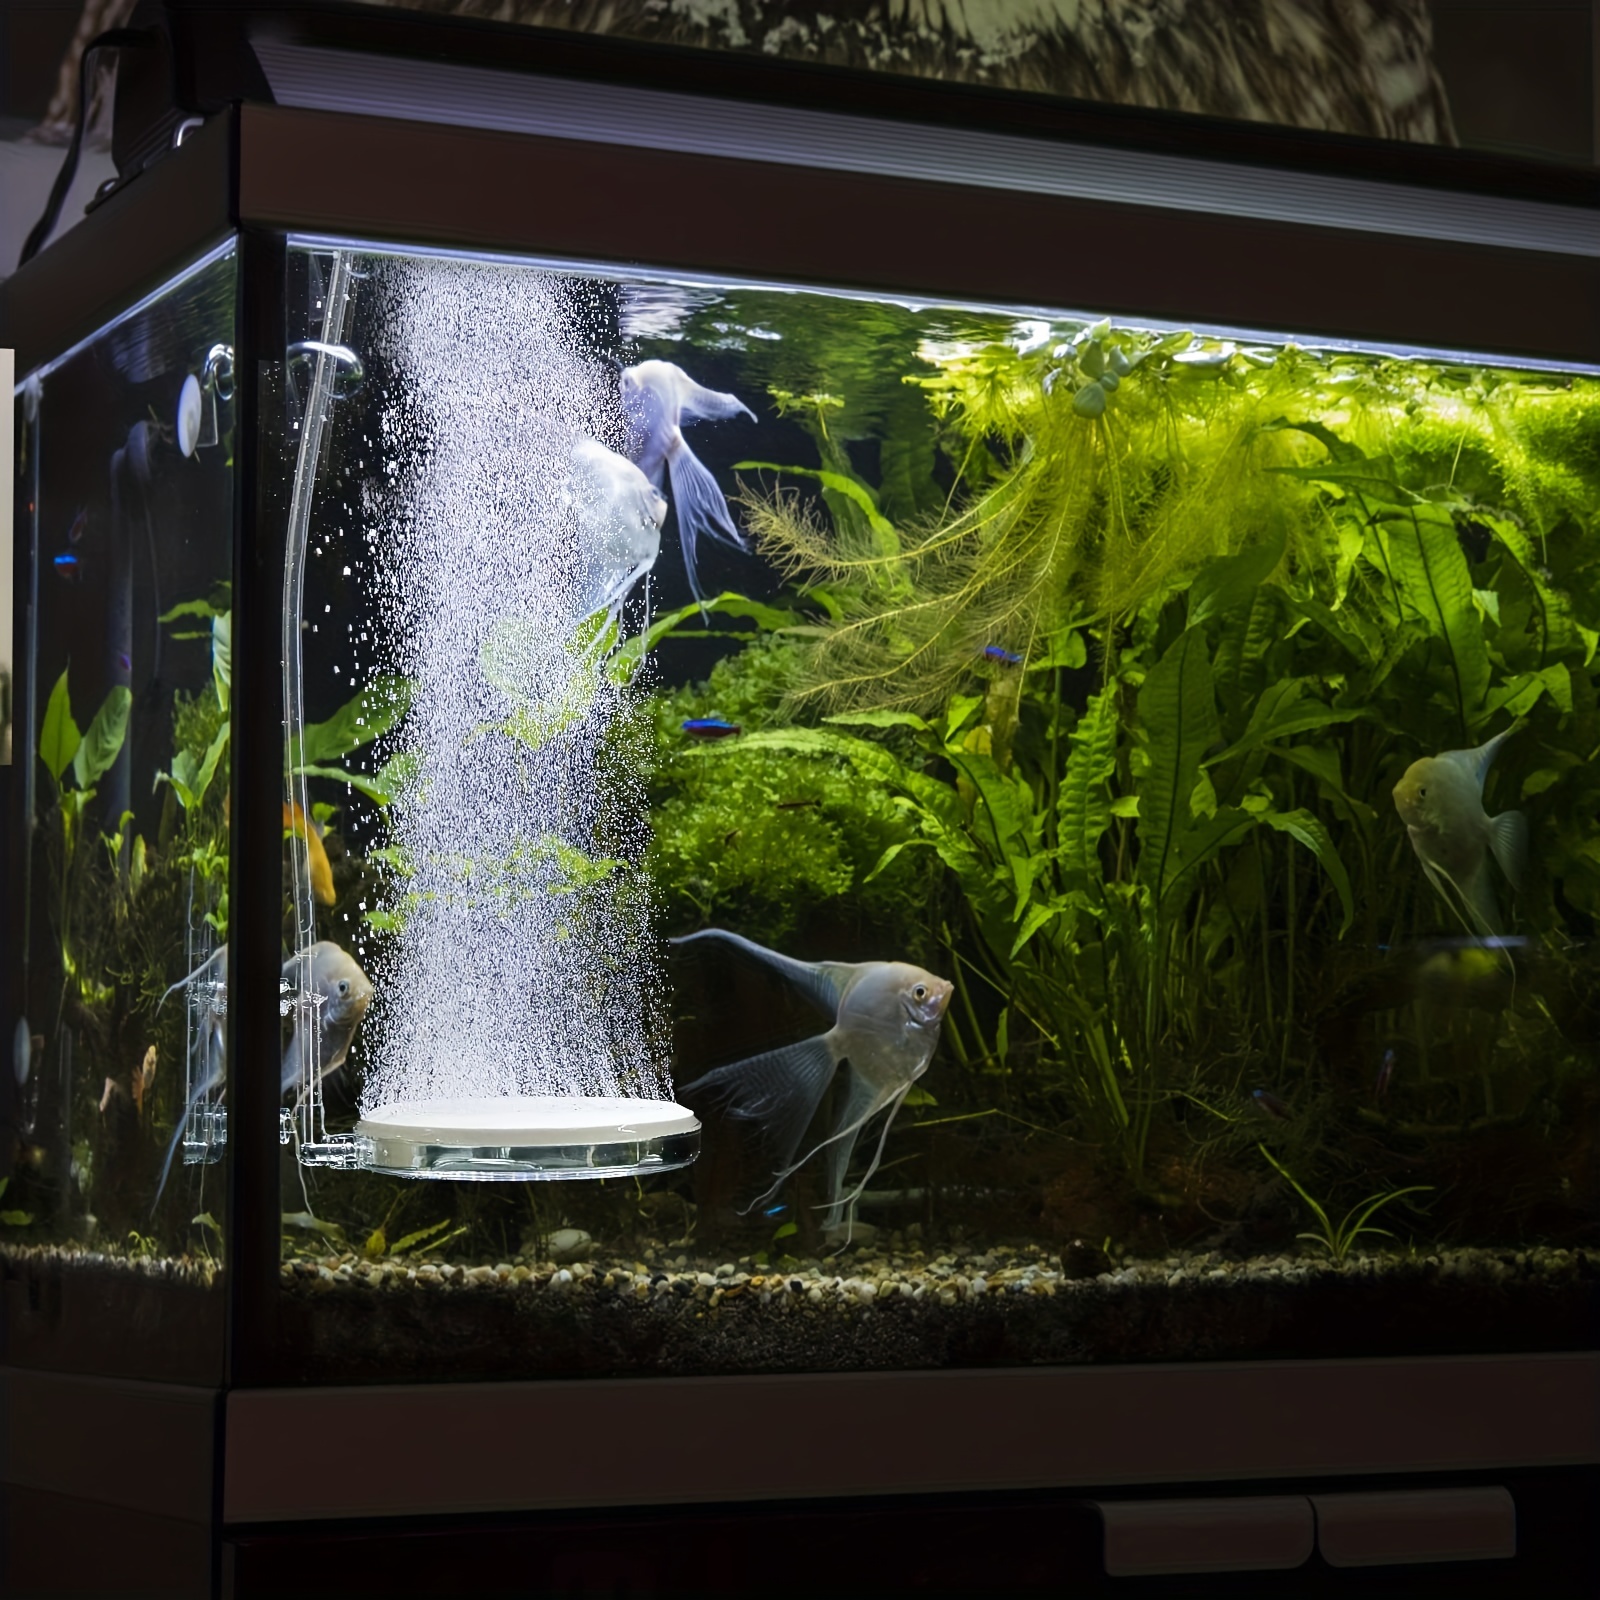 Fish Tank Aquarium Bubble Bar Aquarium Oxygen Bar Diffuser - Temu